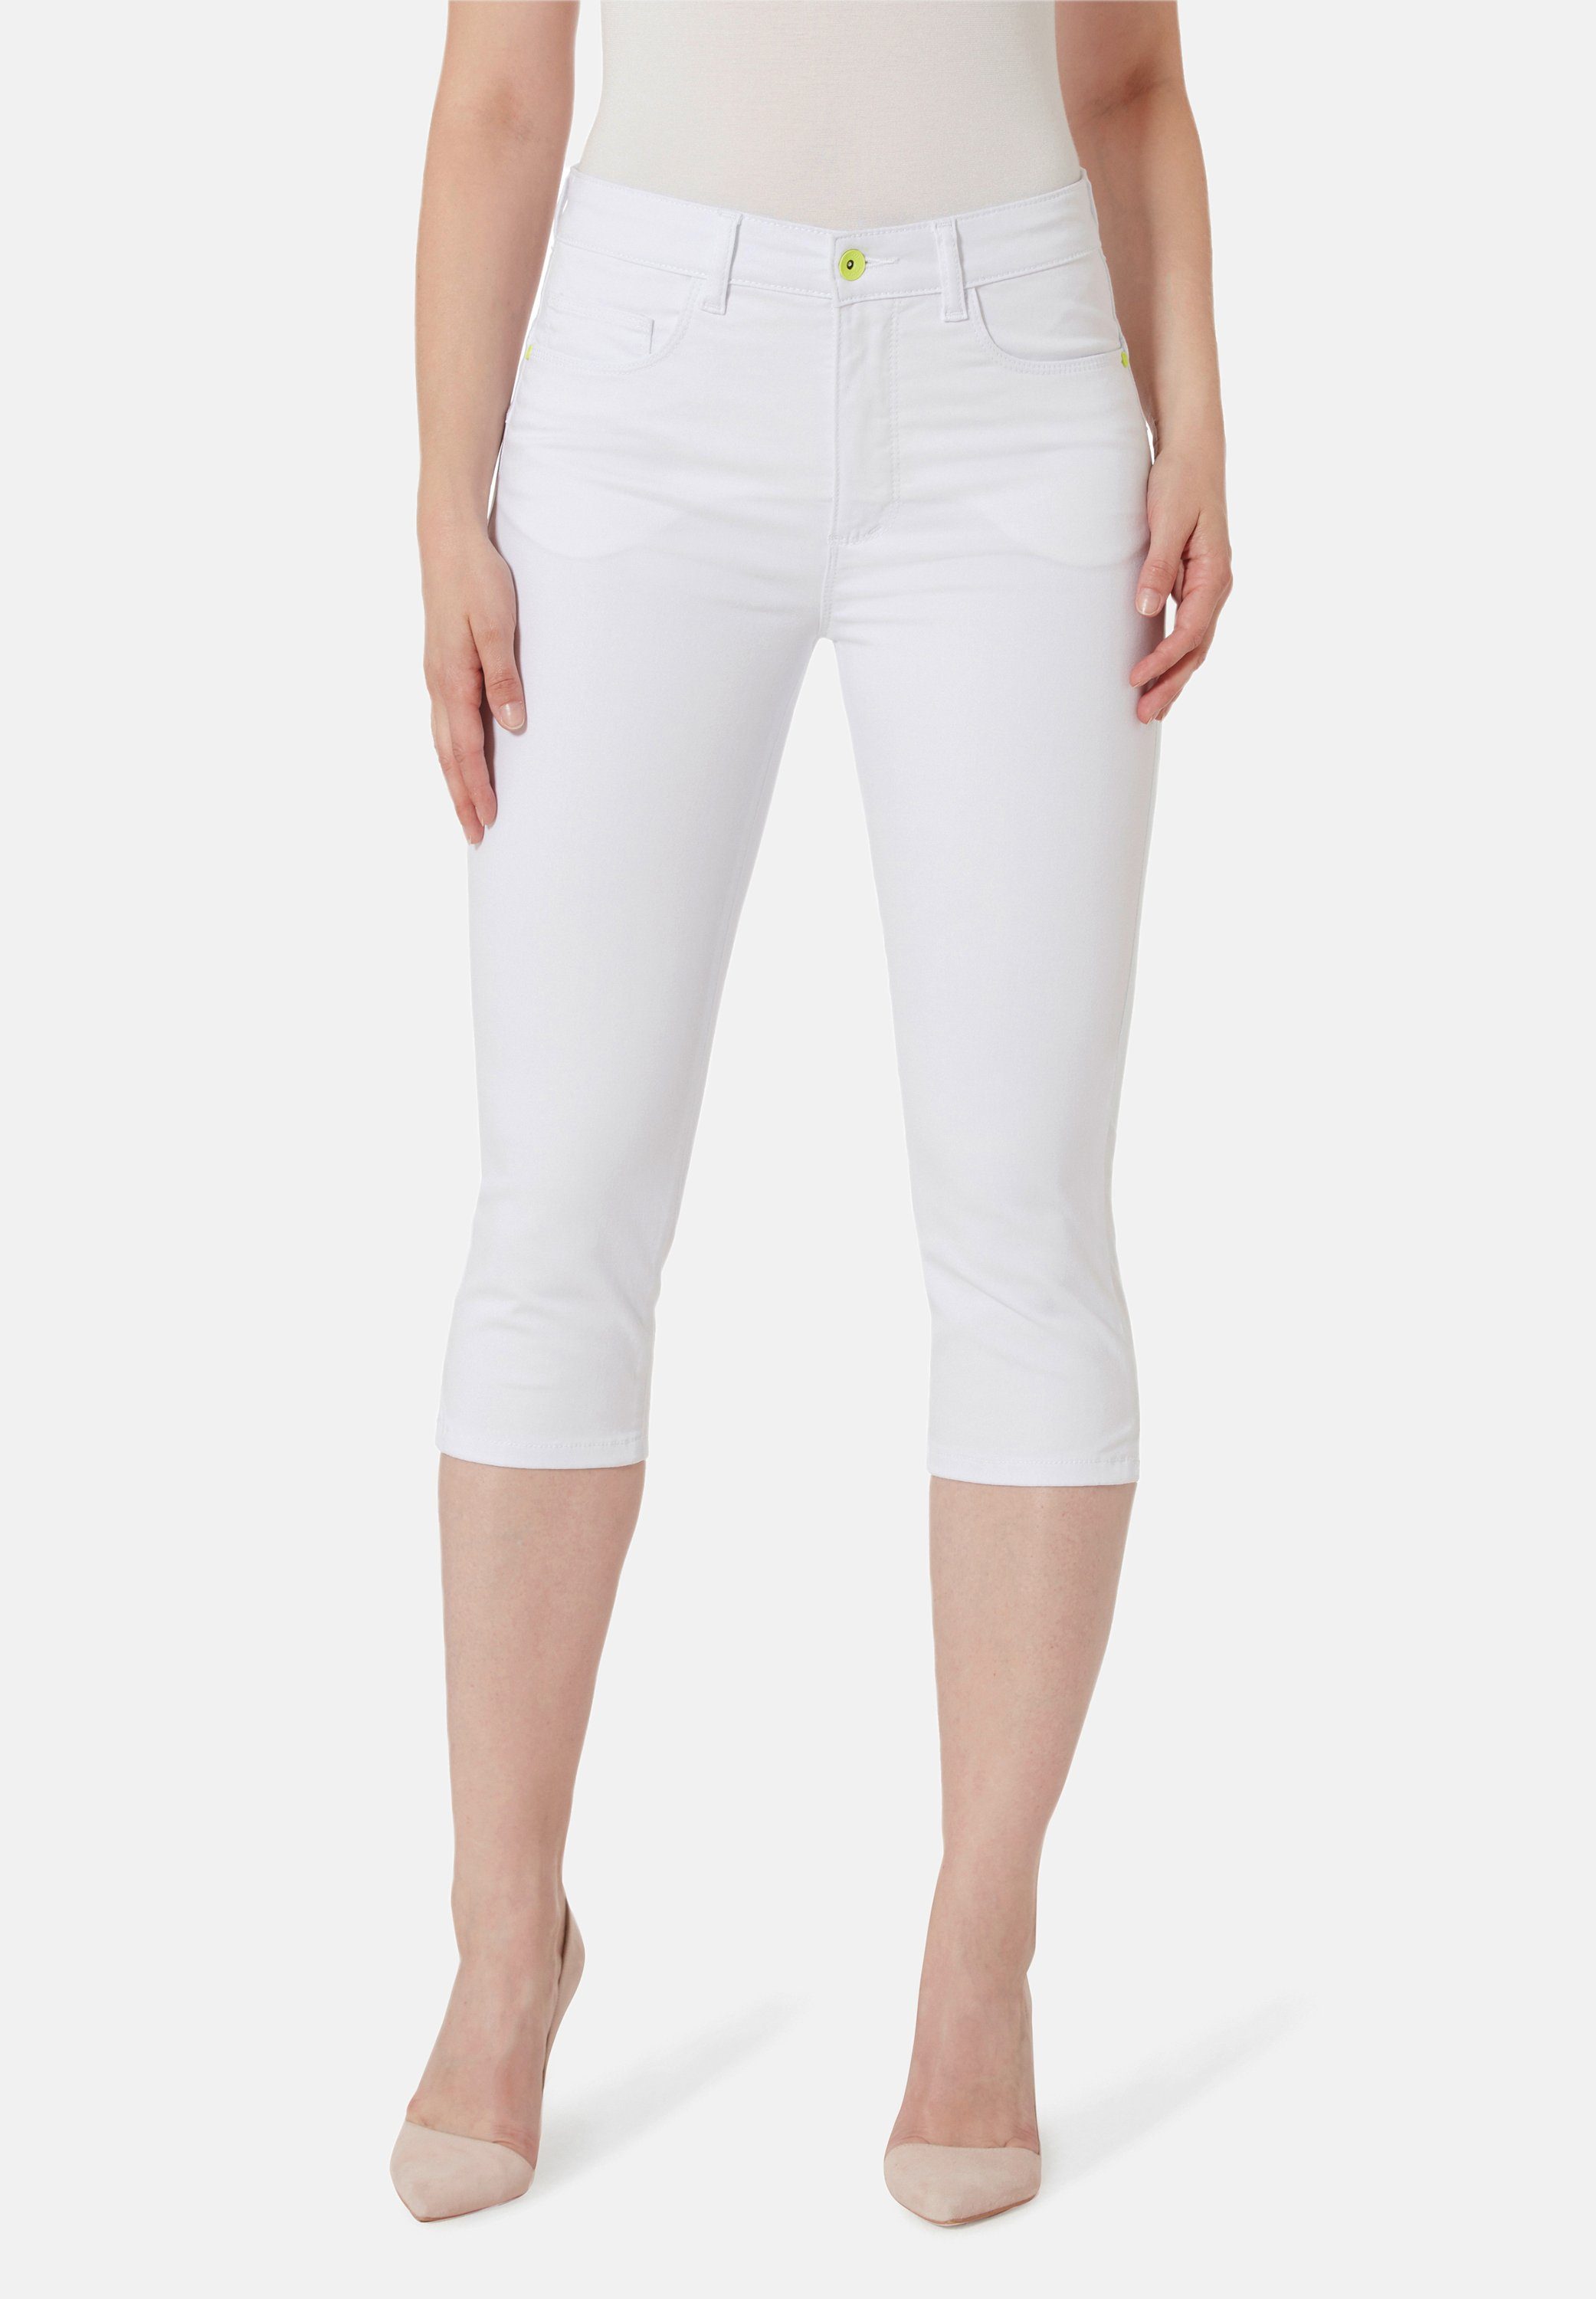 STOOKER WOMEN 7/8-Jeans Capri Fit Denim white Skinny